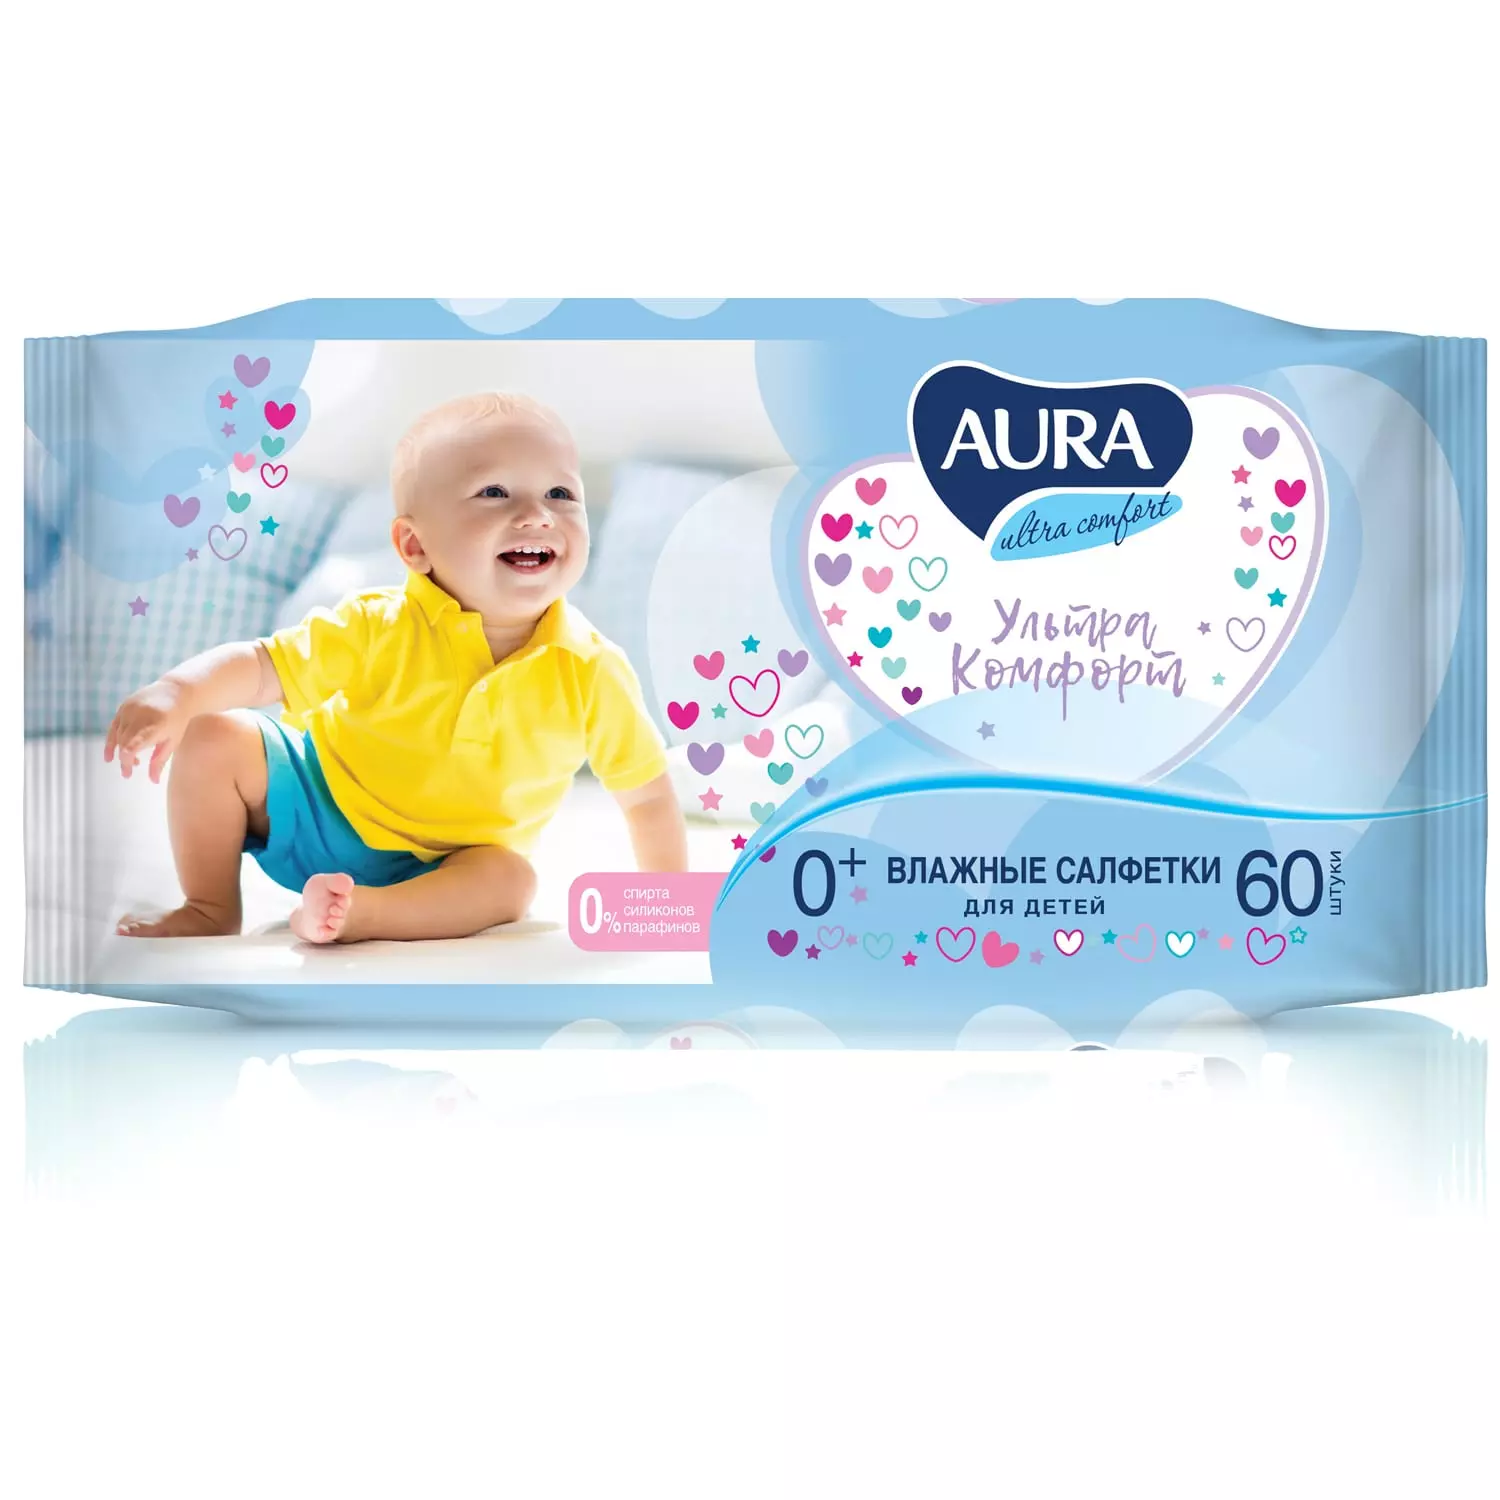 Влажные салфетки для детей Ultra Comfort 0+, 60 шт